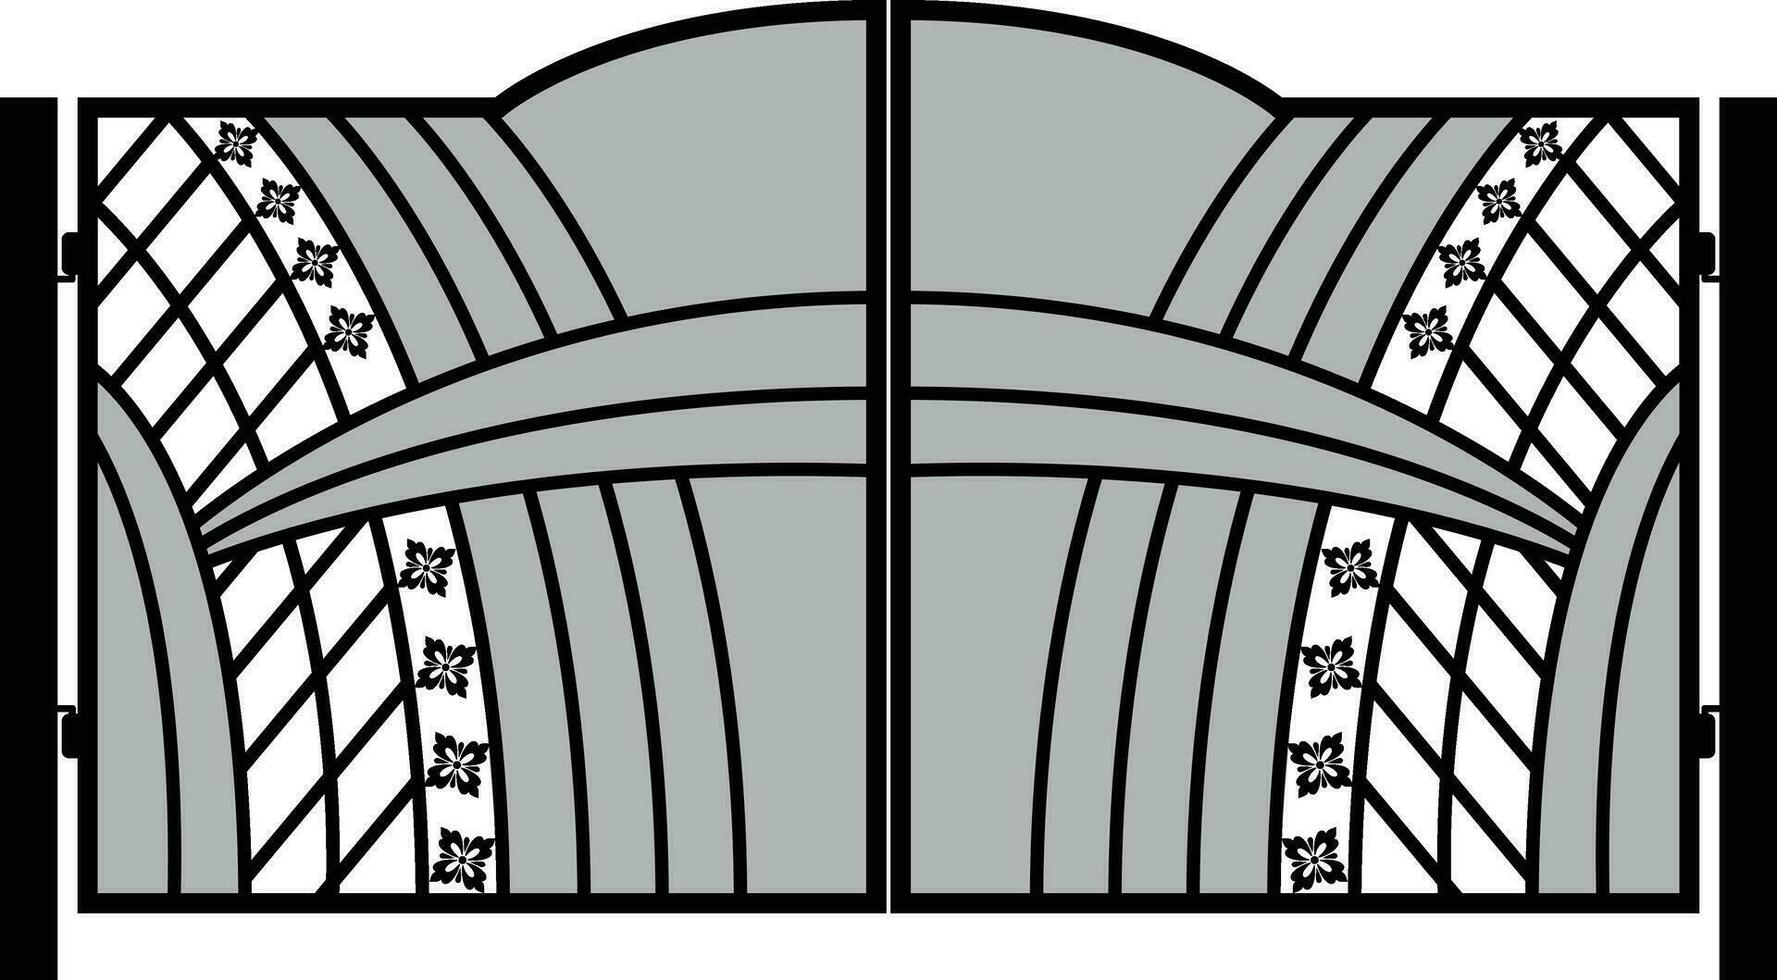 moderno forgiato cancelli, cancello icone, portale segni, decorativo metallo cancelli con vortici, frecce, e ornamenti, vettore illustrazione